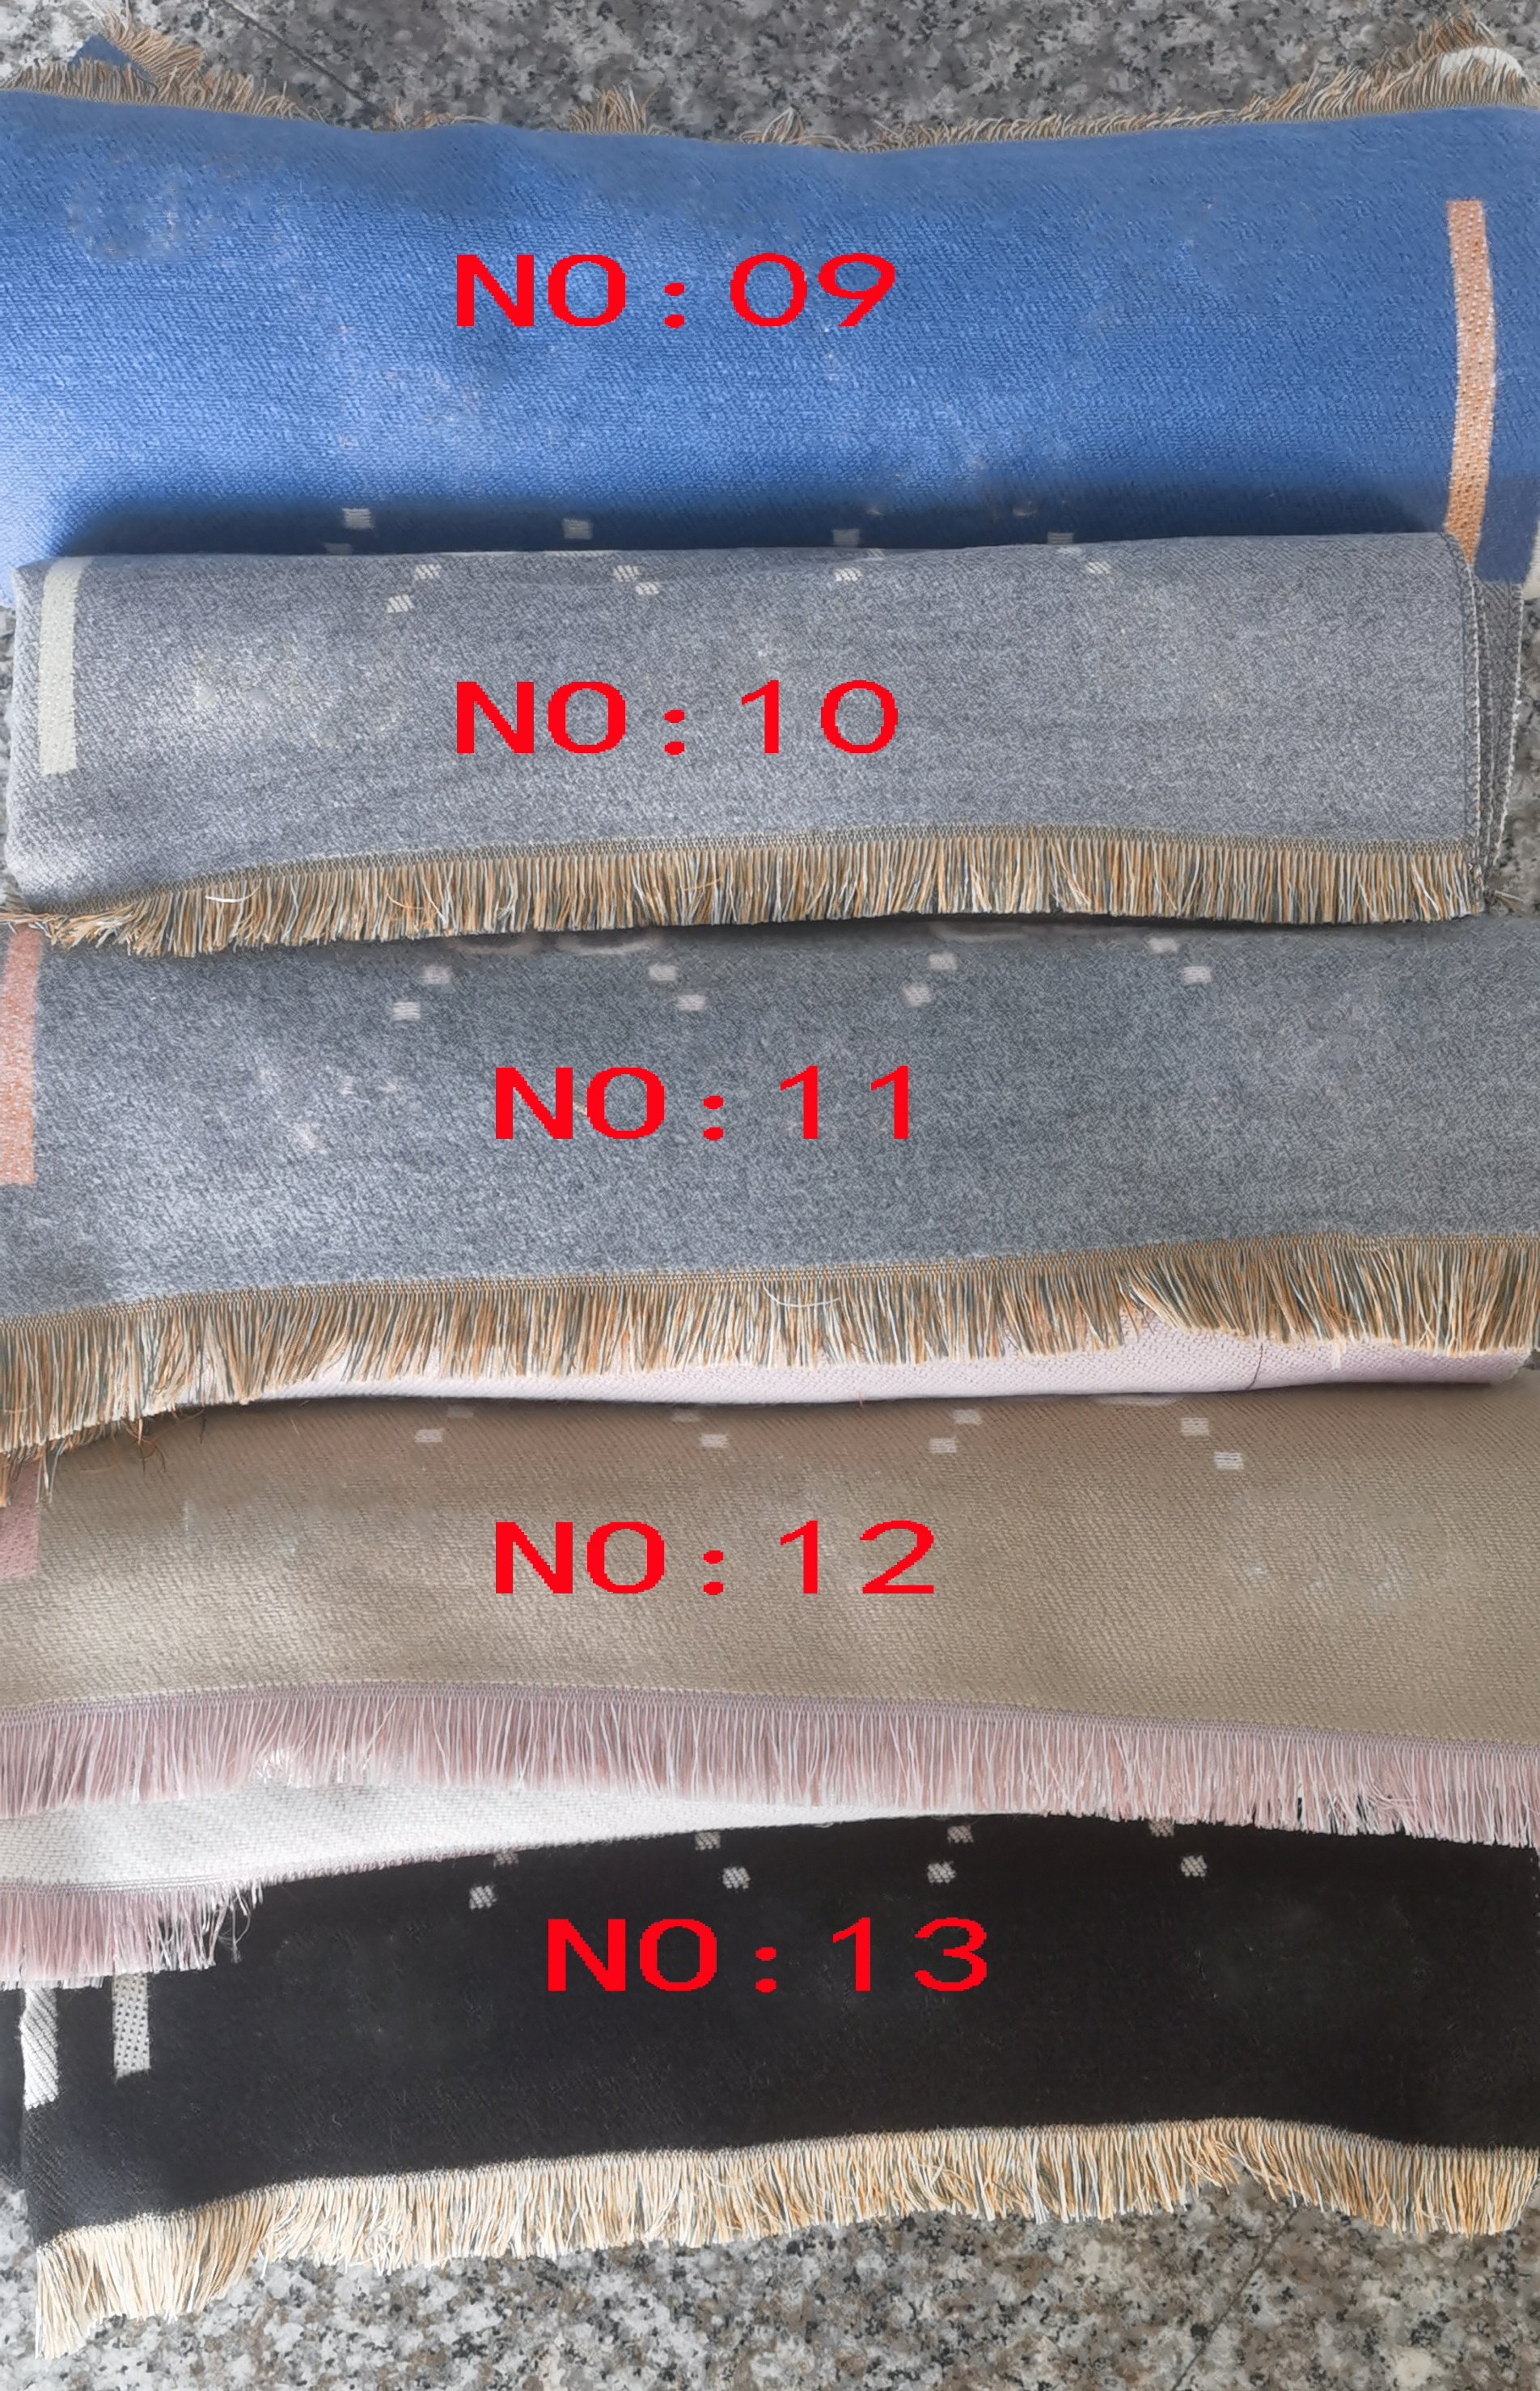 2022 Projektowanie mody Pasmo na głowę ukradła paszmina jesienna i zimowa marka jedwabna szaliki dla kobiet